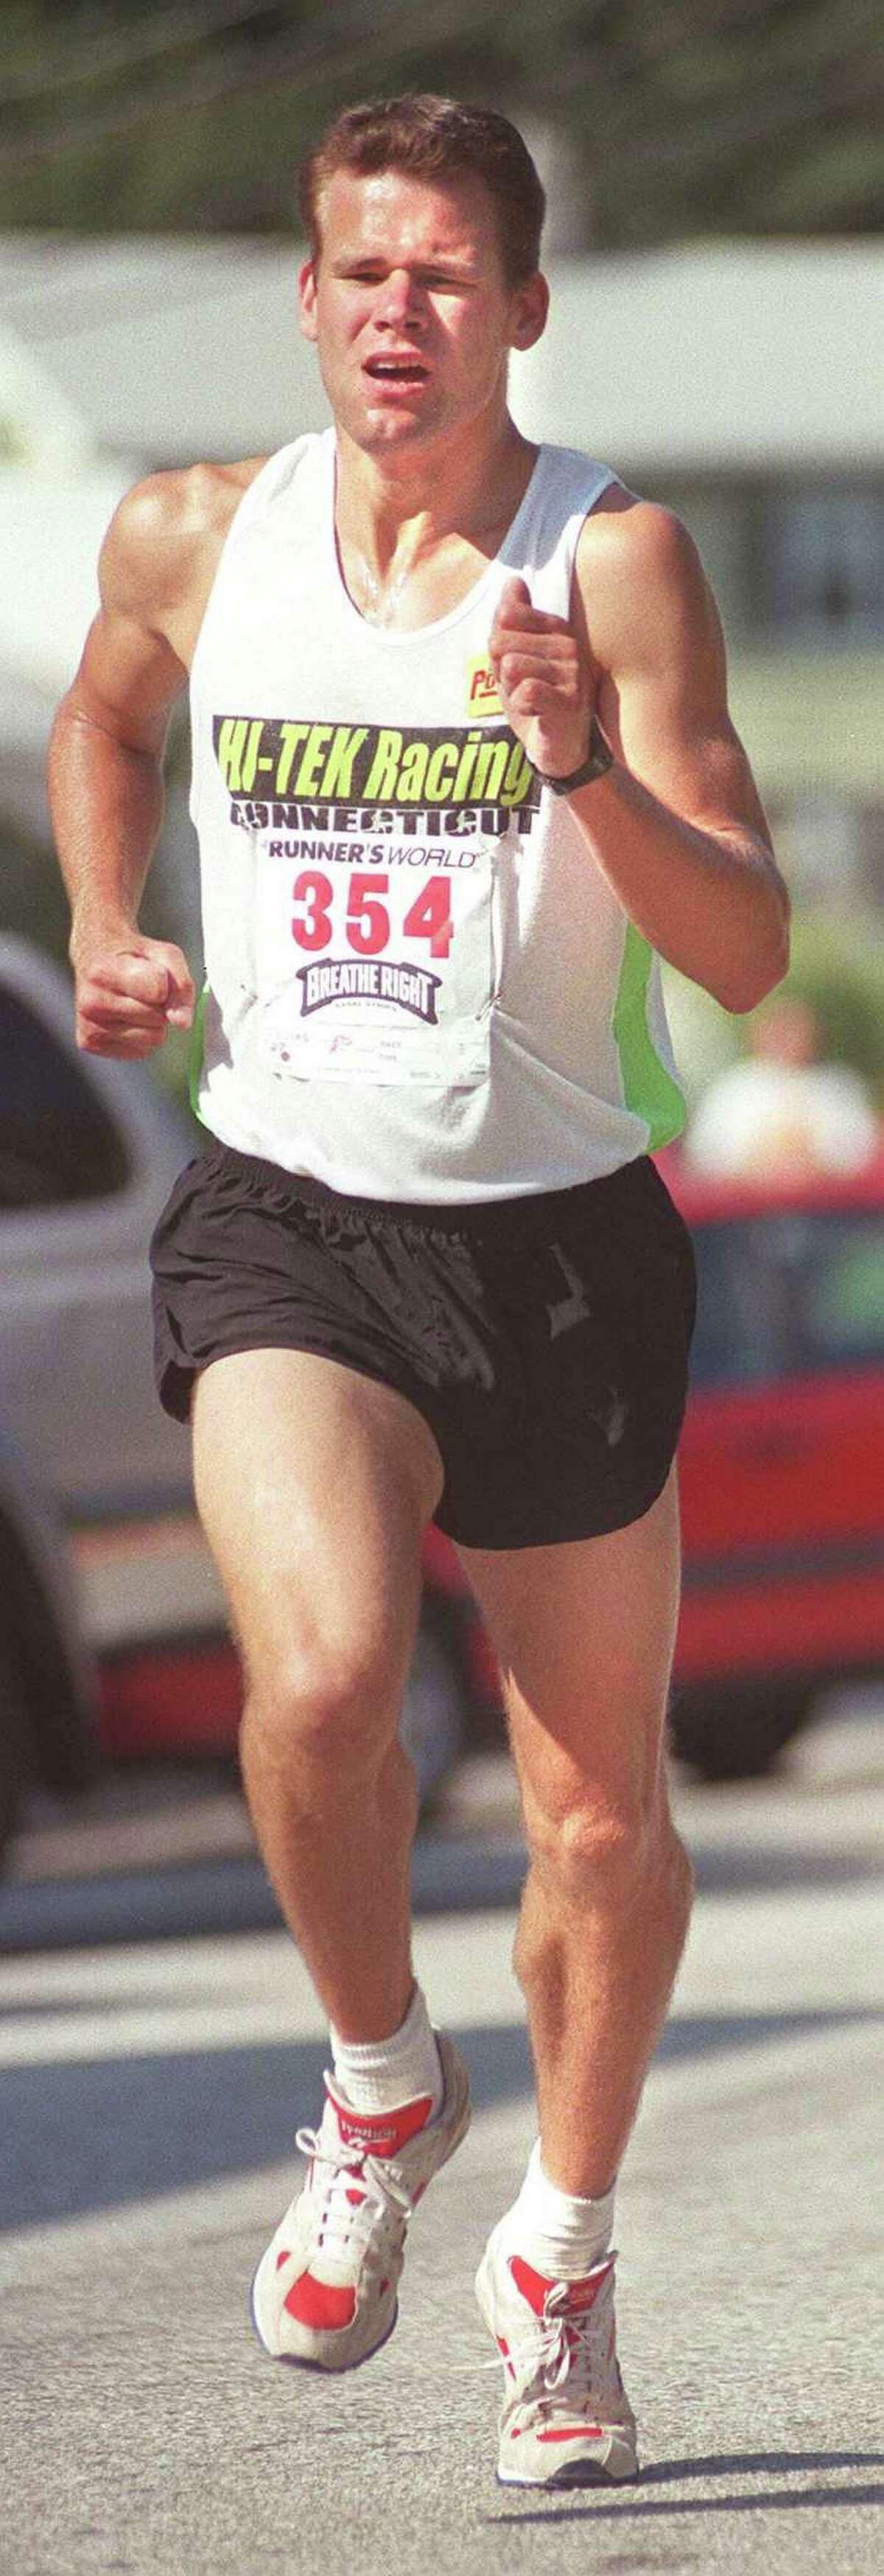 Ed Lucas, winner of the Bethel mile